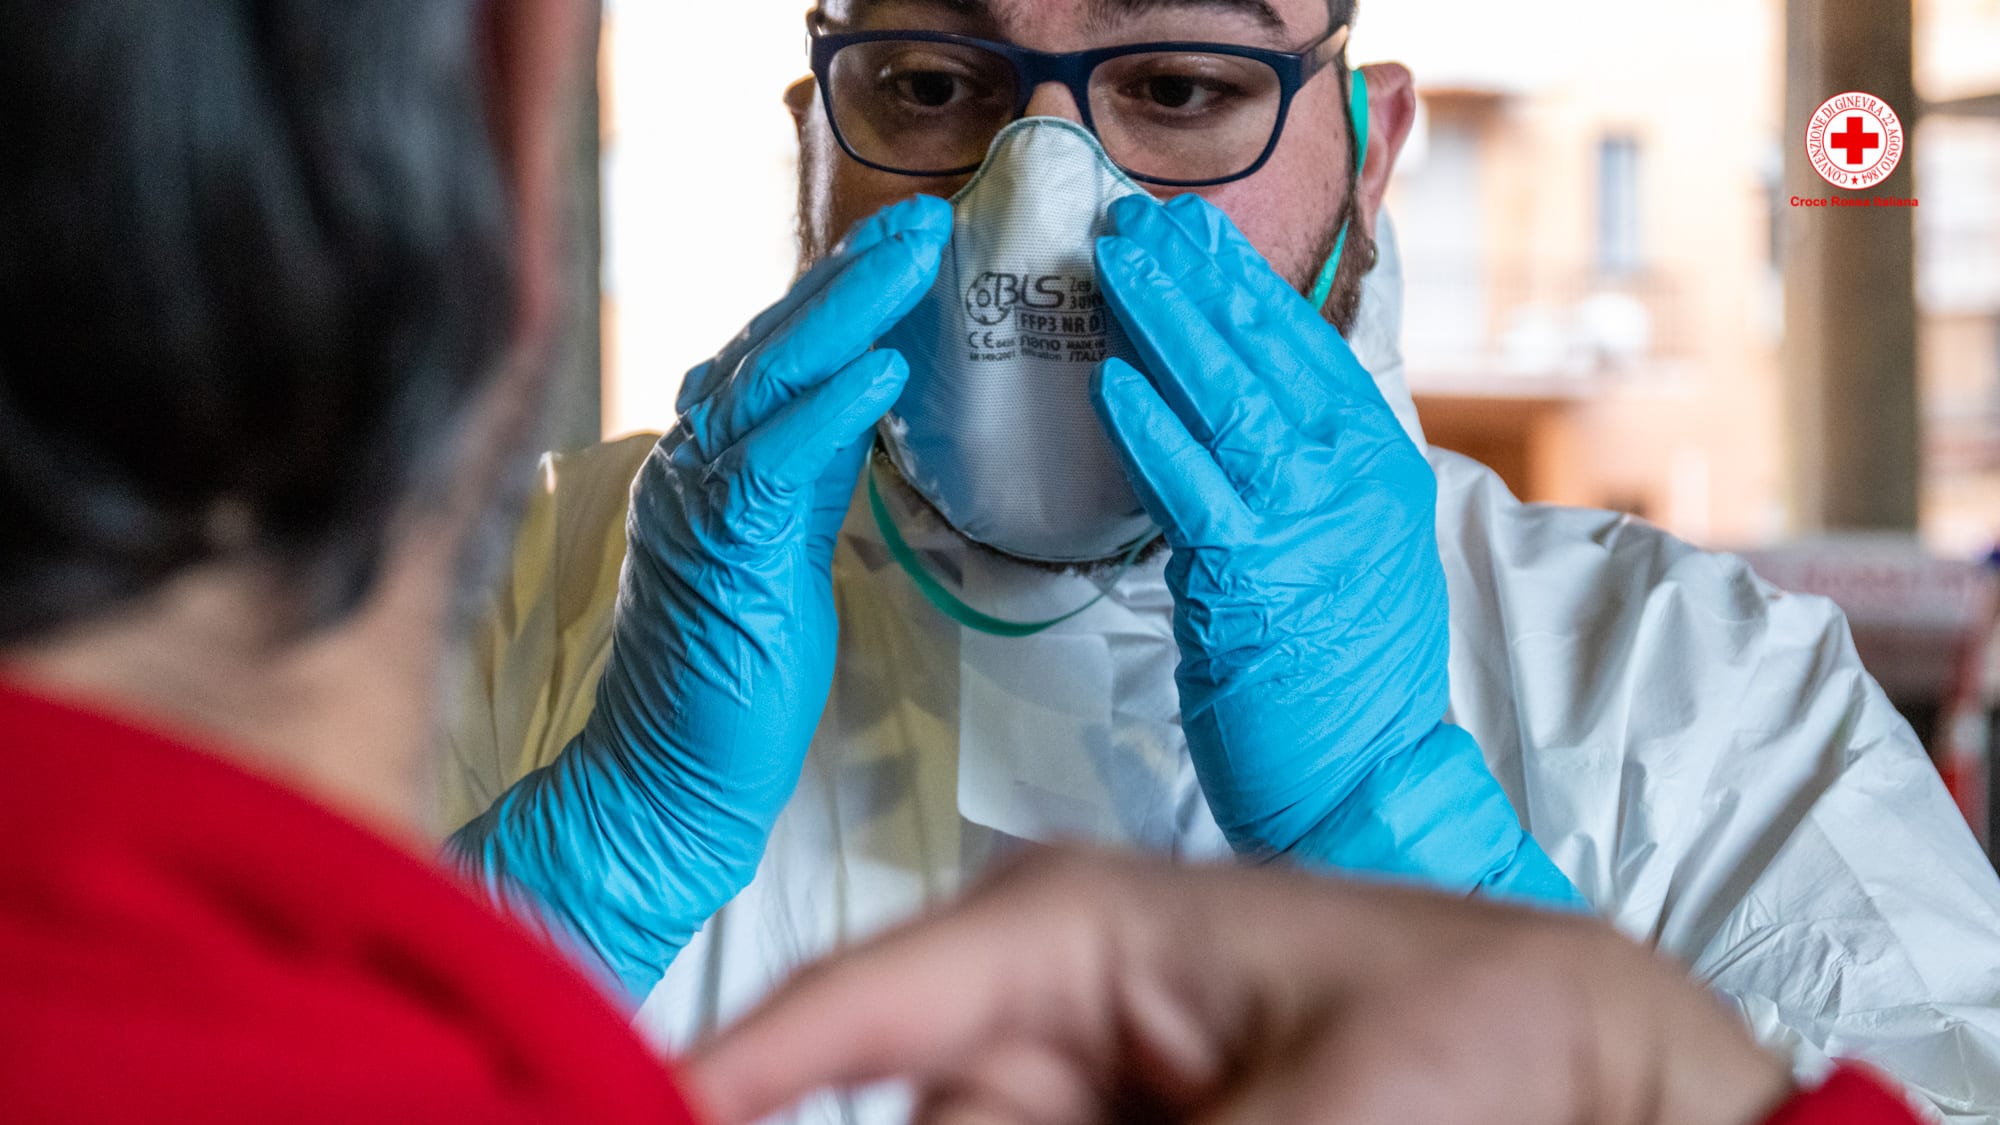 Coronavirus, Cesano Maderno: i dettagli sulle mascherine gratuite